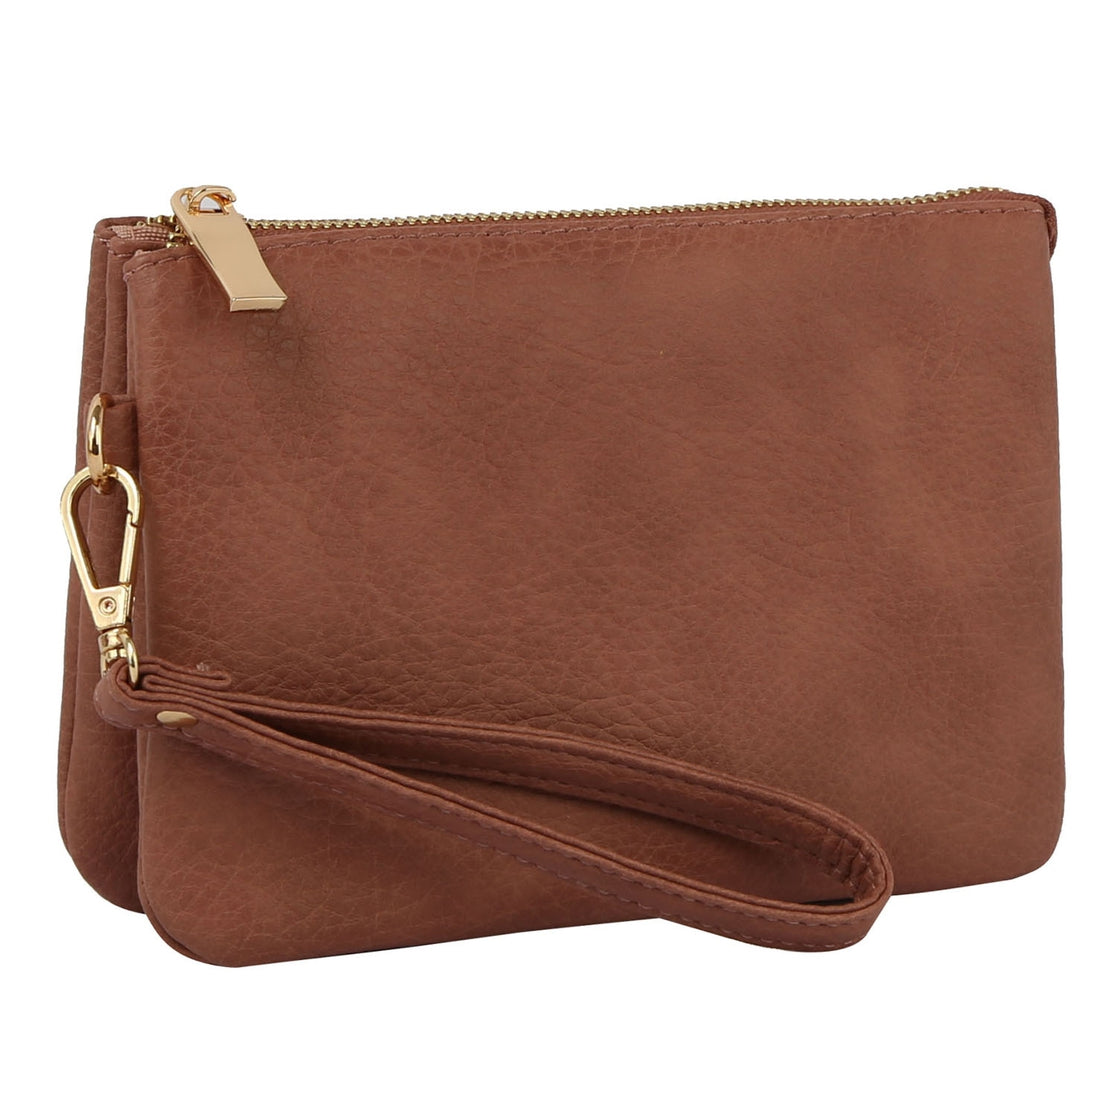 High Capacity Multi-Pocket Crossbody Handbag | Cross body handbags,  Multifunction bag, Handbag